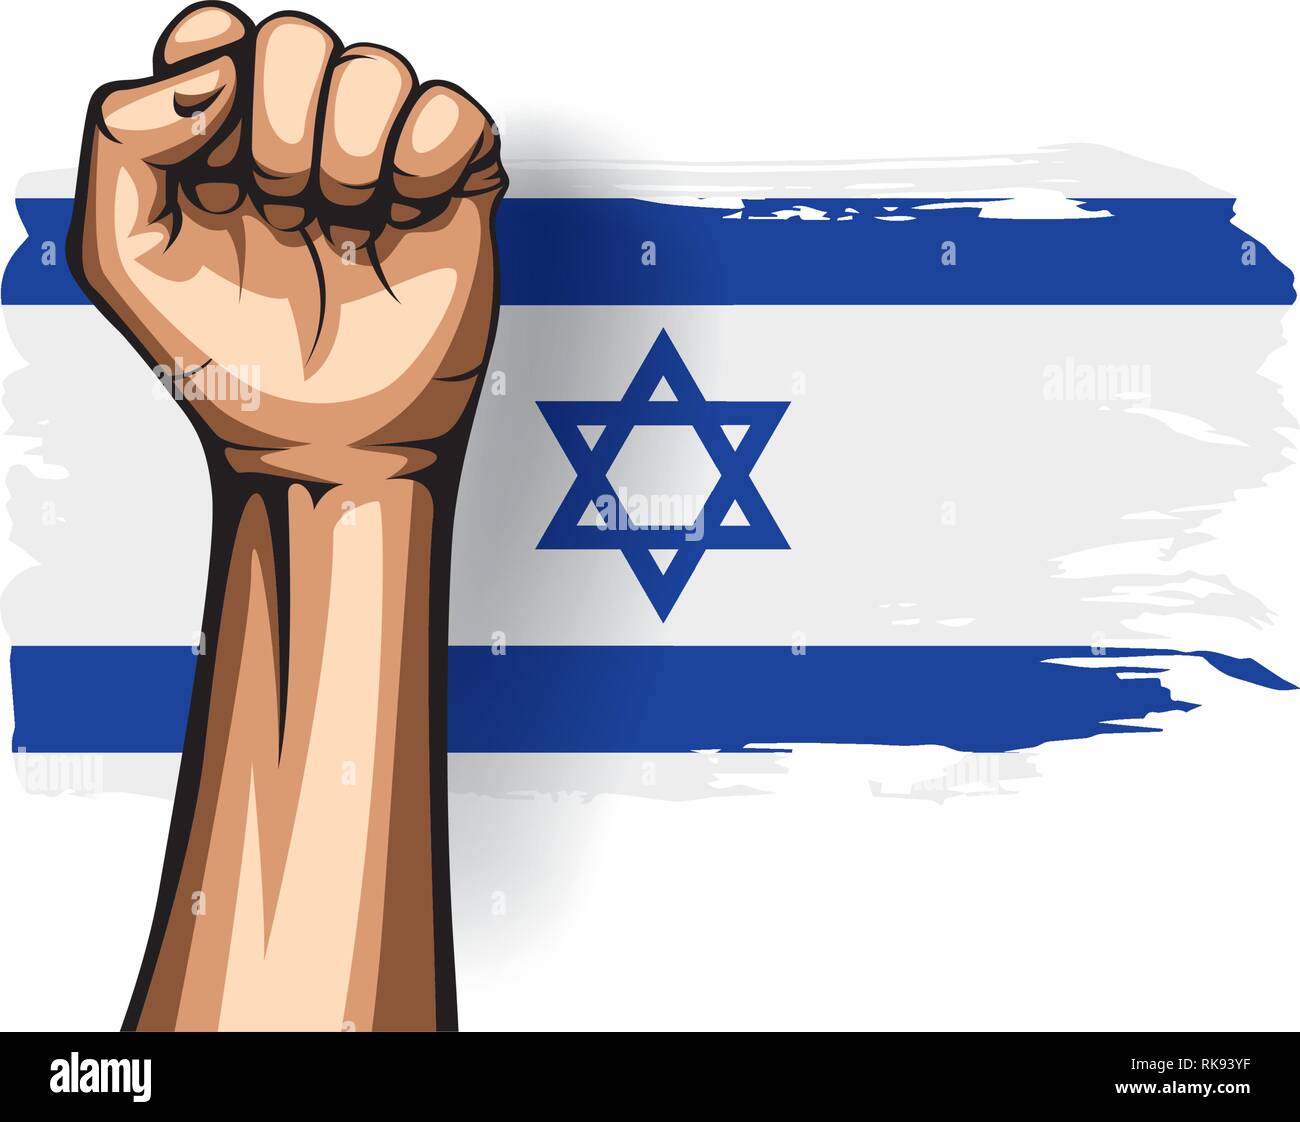 https://c8.alamy.com/comp/RK93YF/israel-flag-and-hand-on-white-background-vector-illustration-RK93YF.jpg